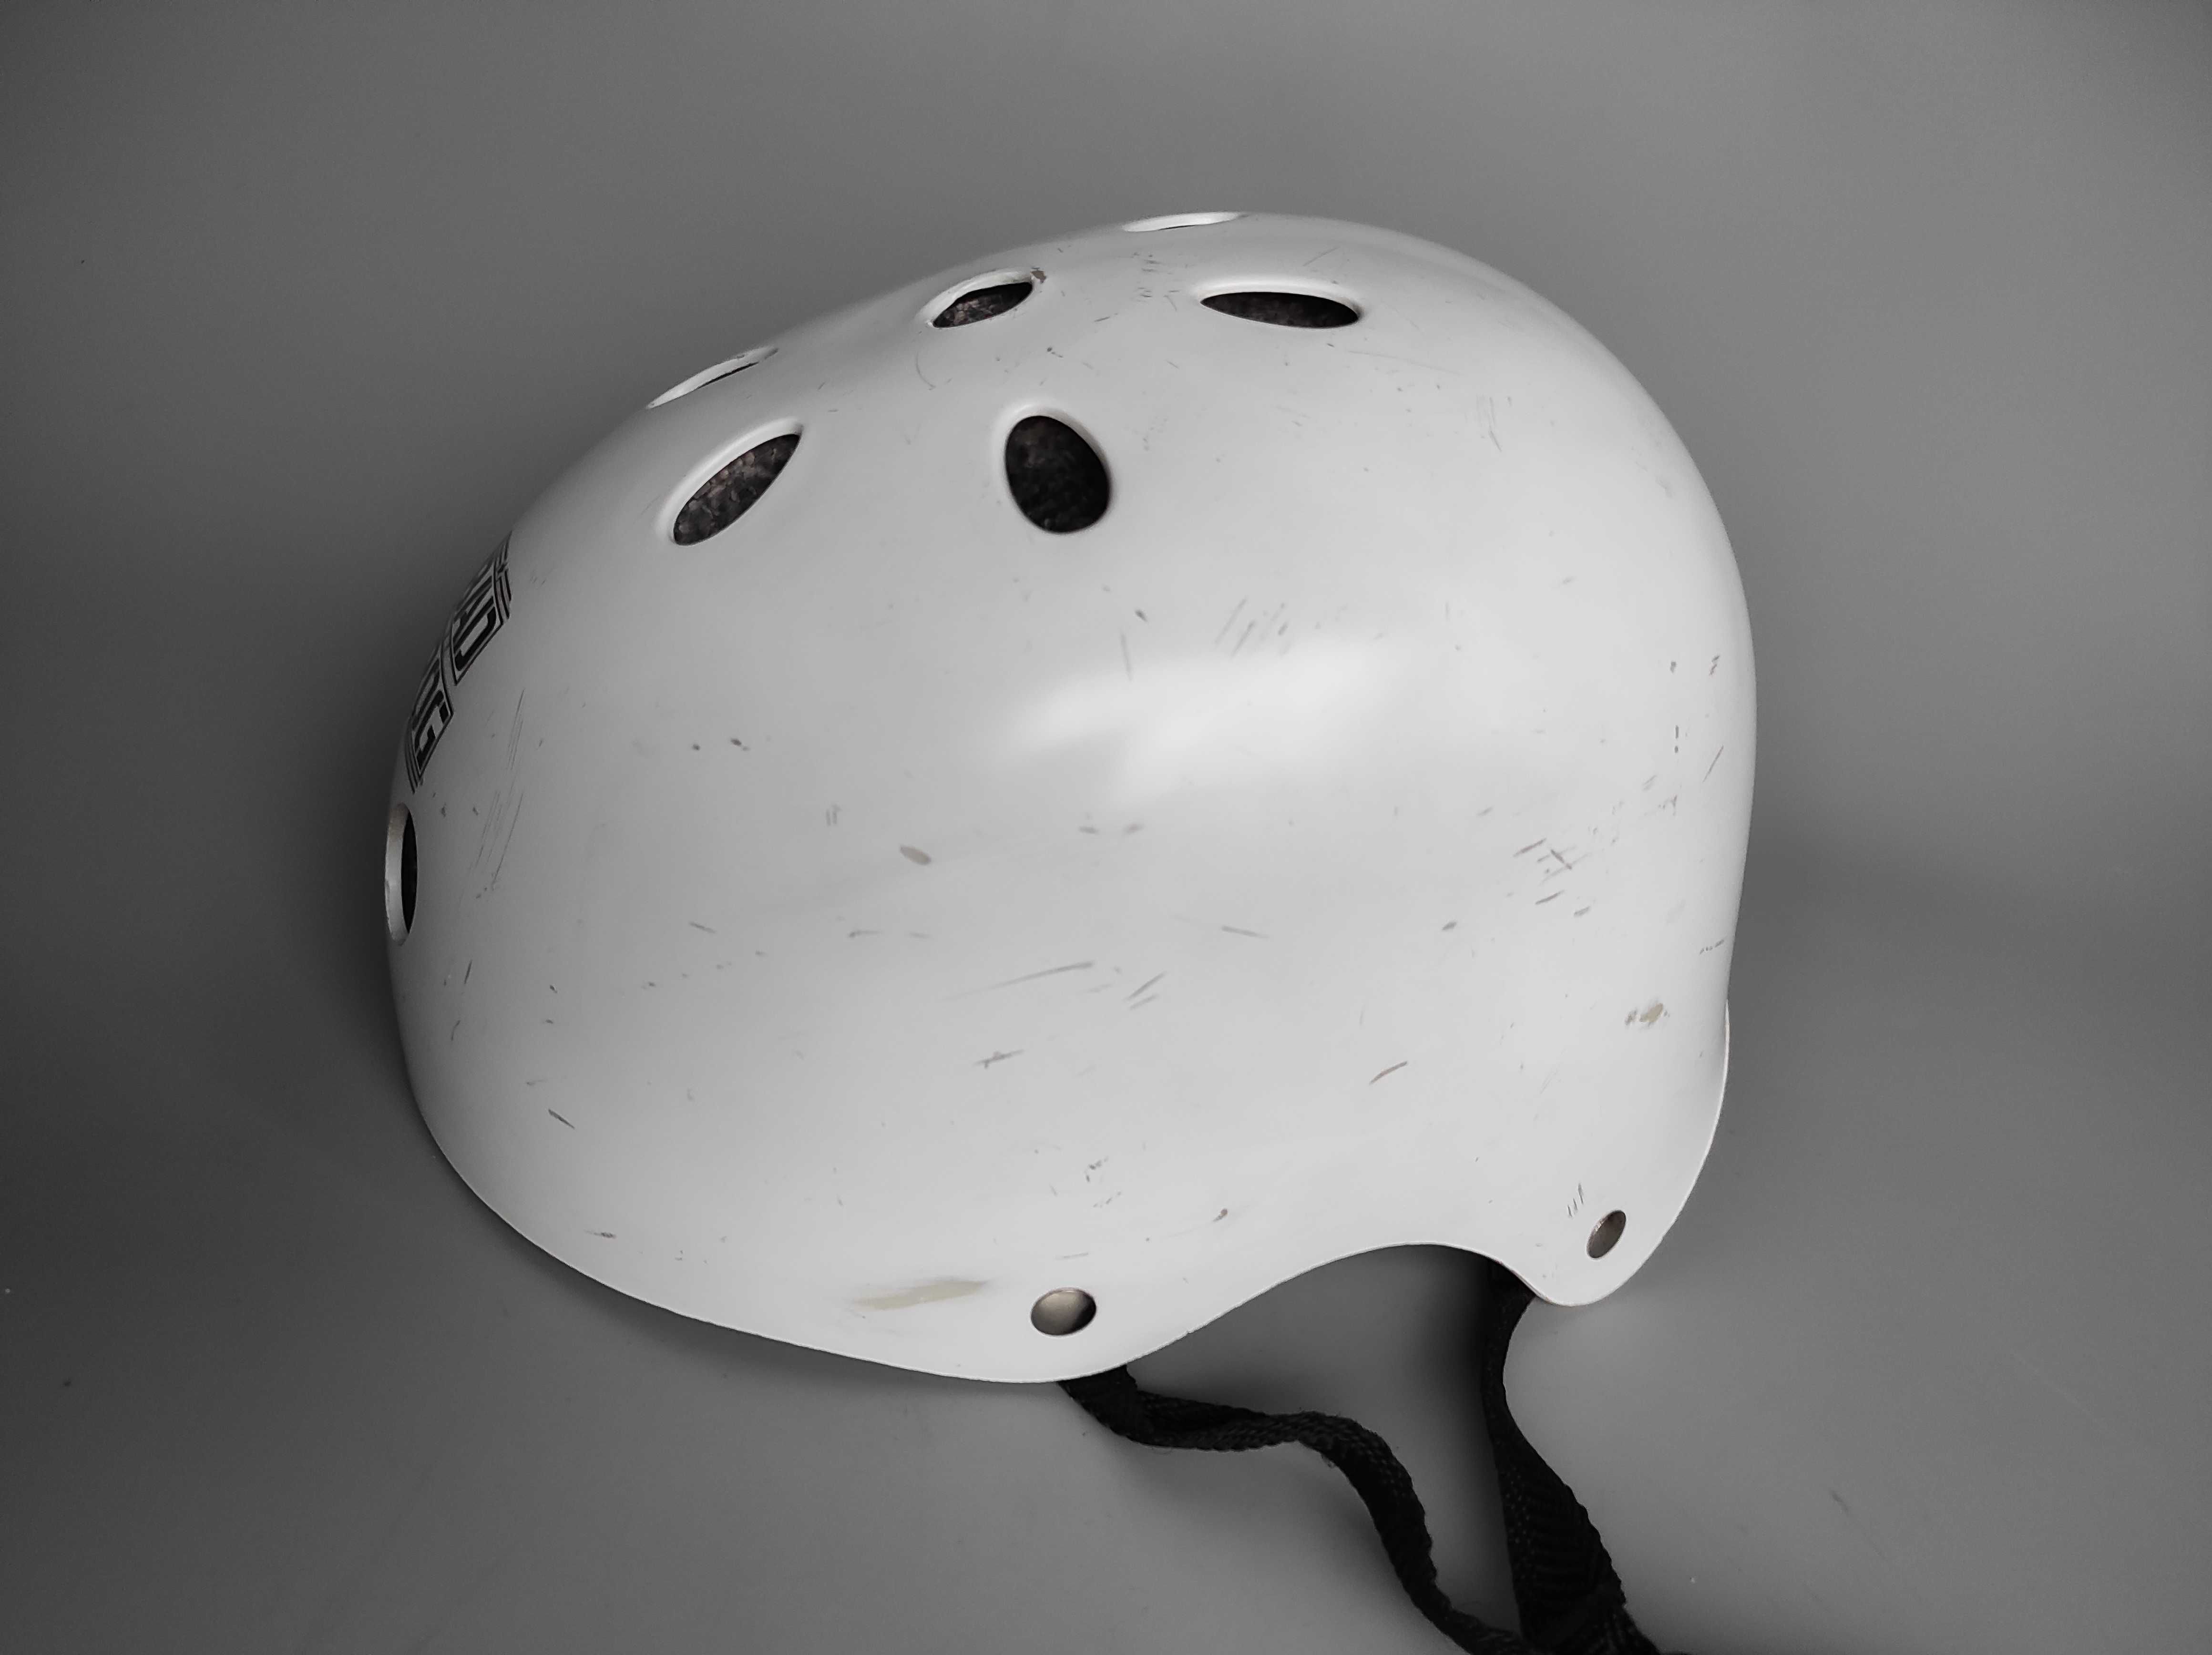 Детский шлем котелок FUN4U Bad Frog, размер S 50-54см, велосипедный